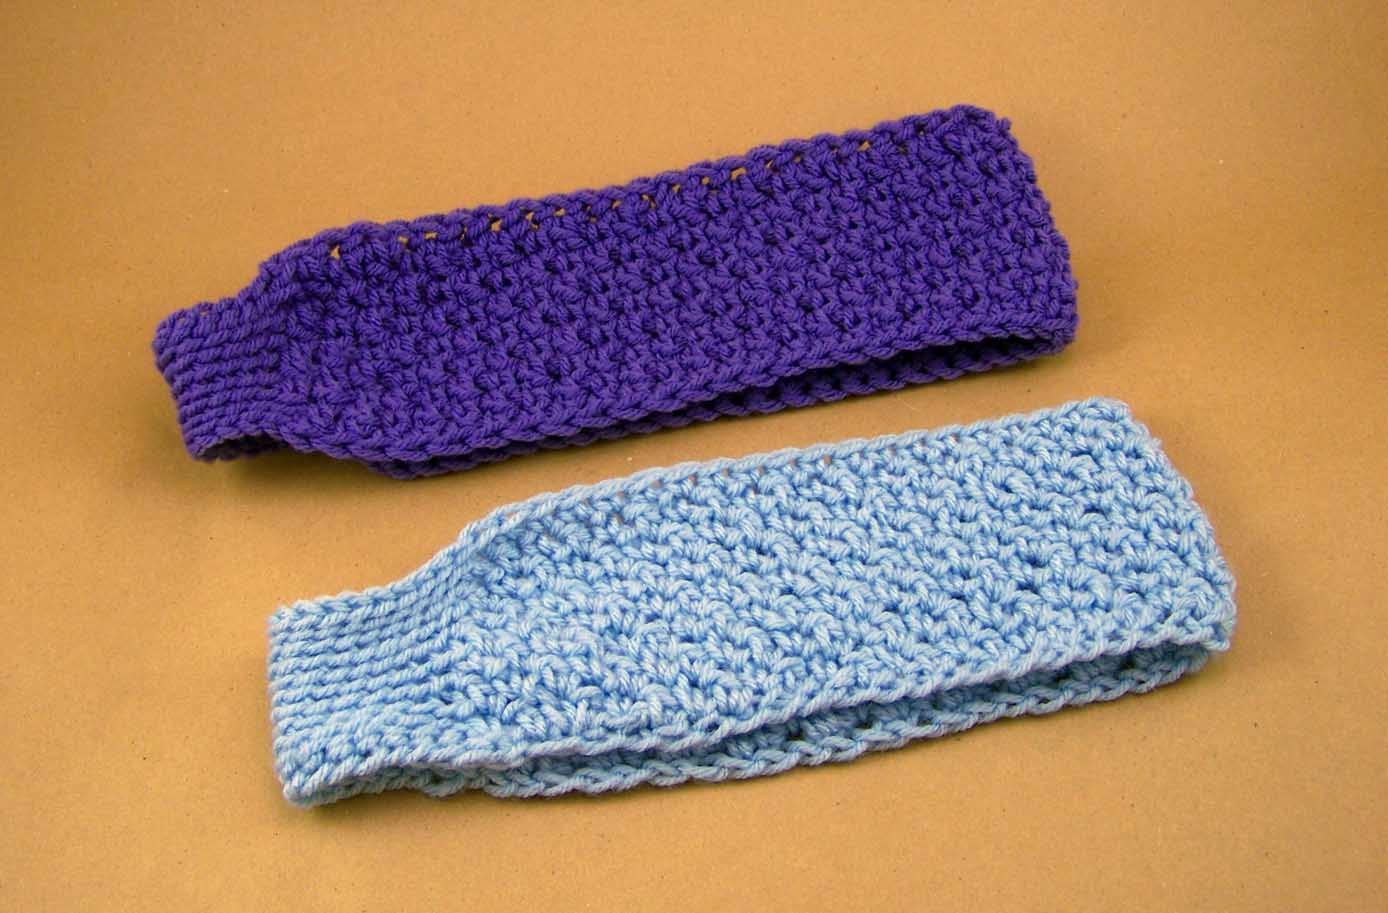 Crochet Headbands Ear Warmers Patterns Free 16 Crochet Ear Warmer Patterns Guide Patterns